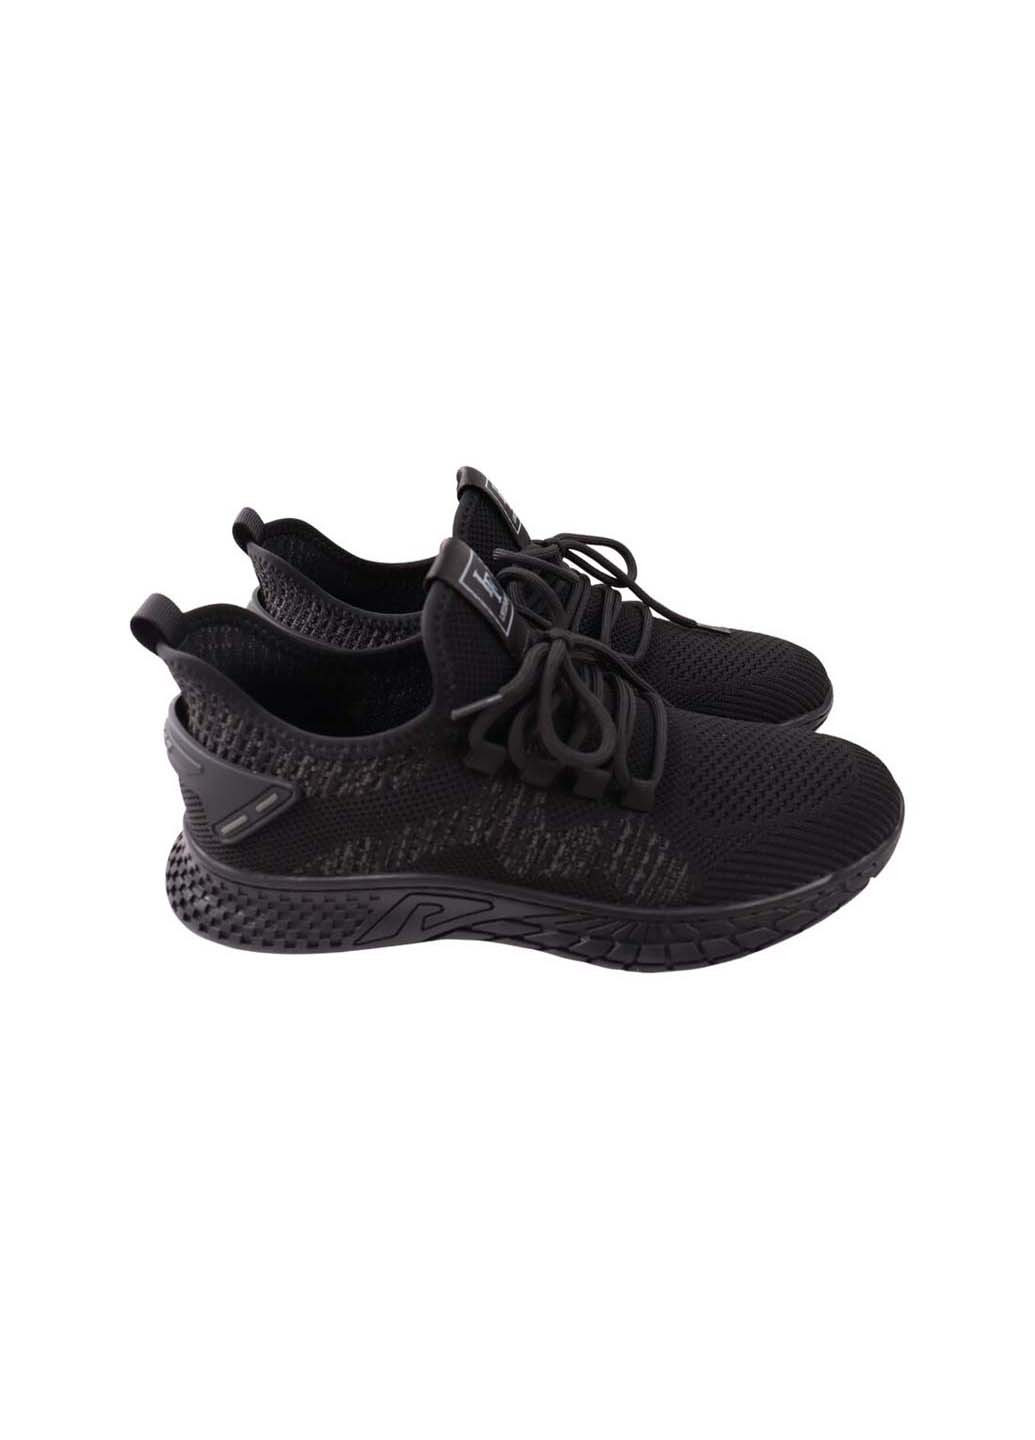 Черные кроссовки Lifexpert 1367-23LK